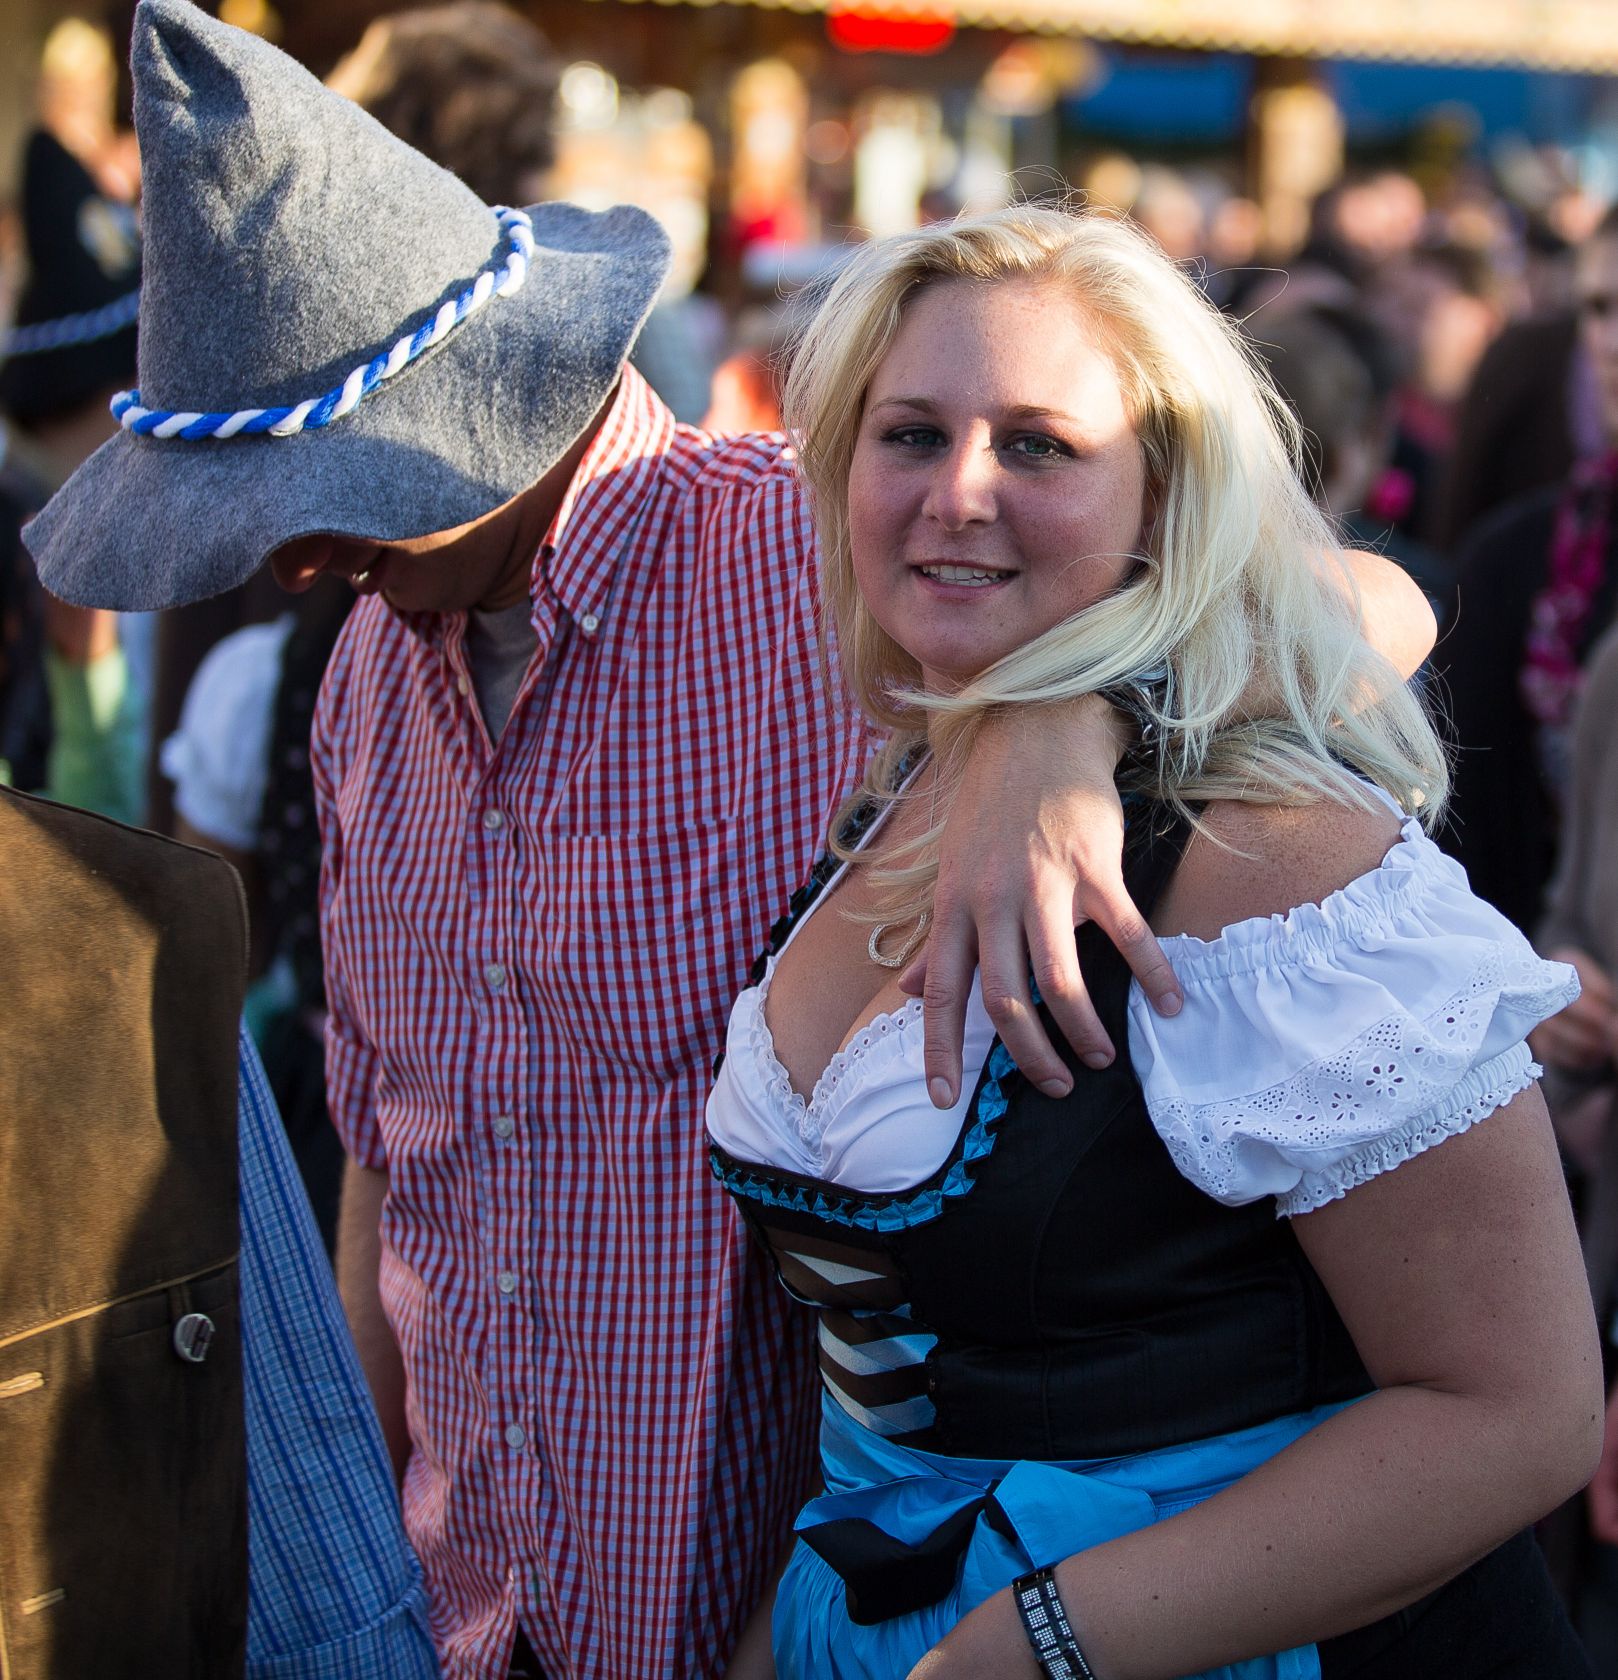 Beer_Fest_Munich_Oktoberfest (15 von 15)-2